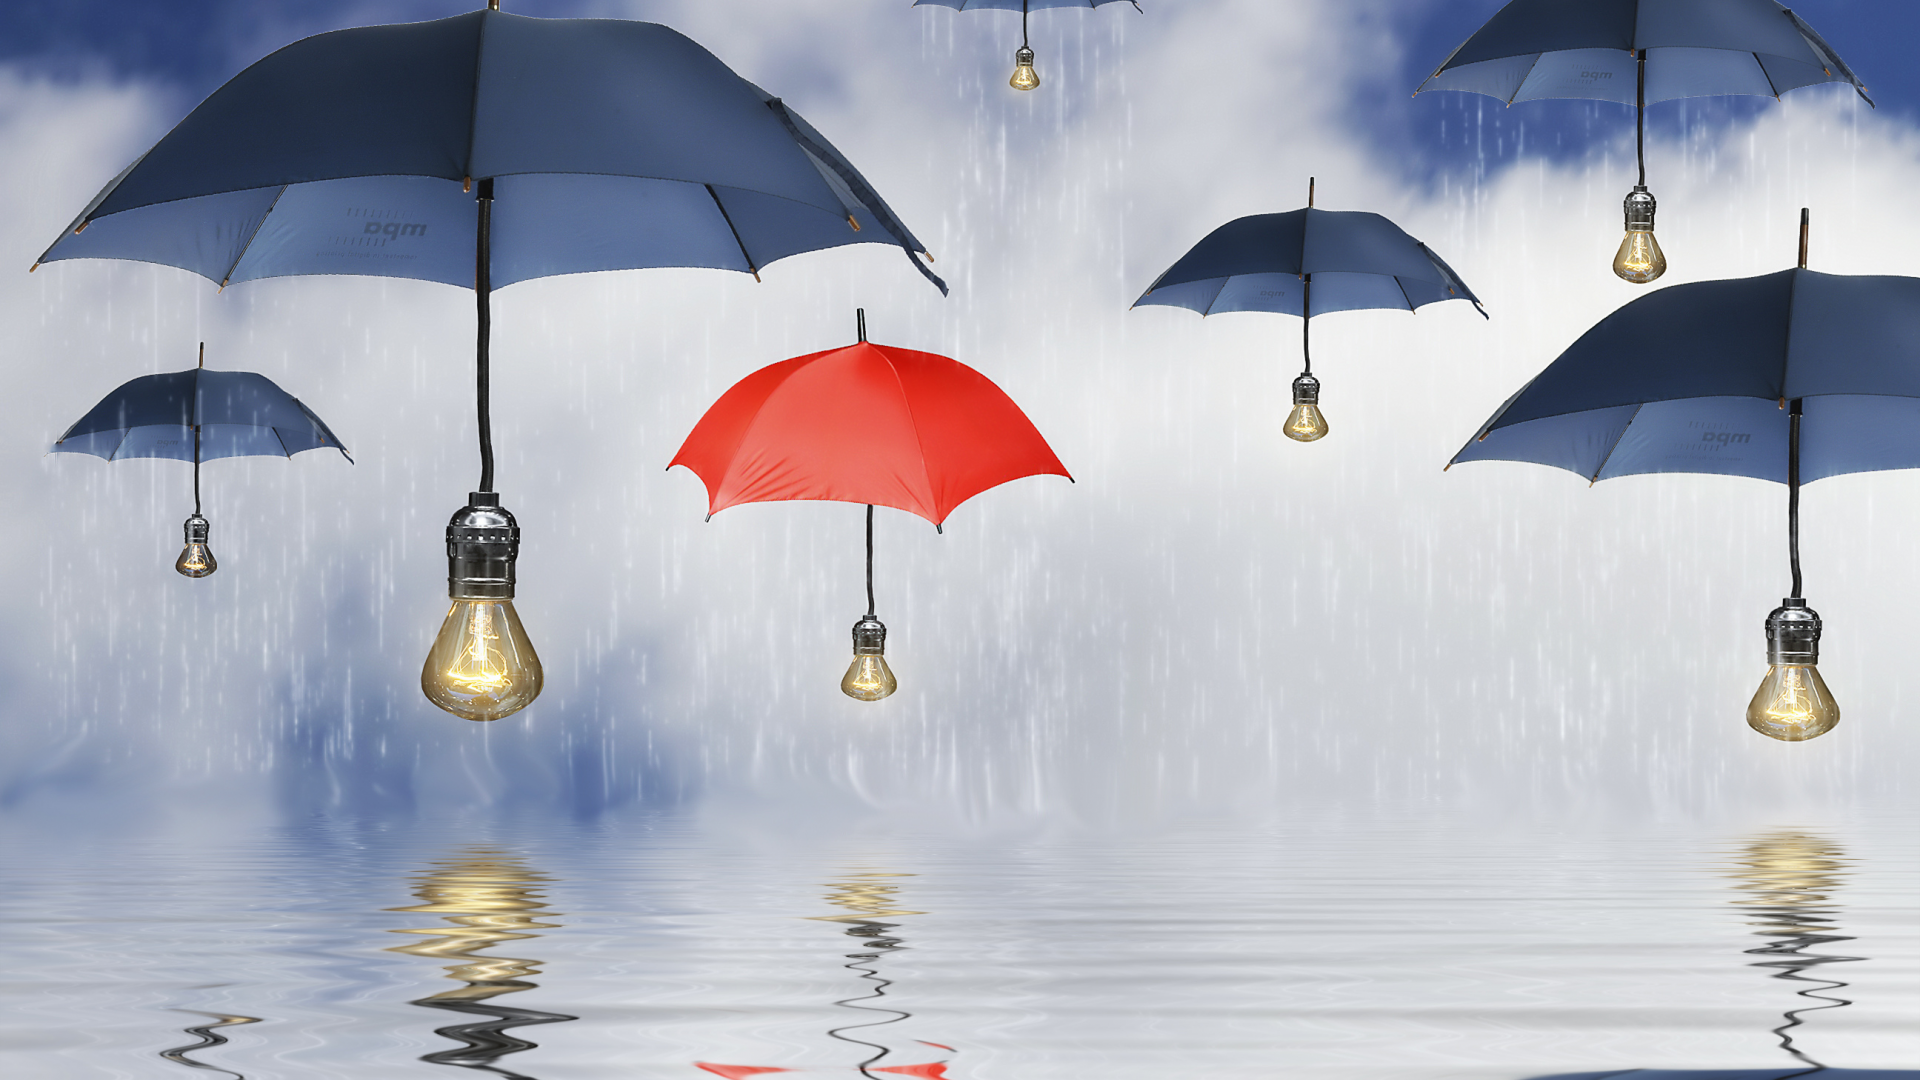 вода, зонты, лампочки, зонтики, дождь, отражение